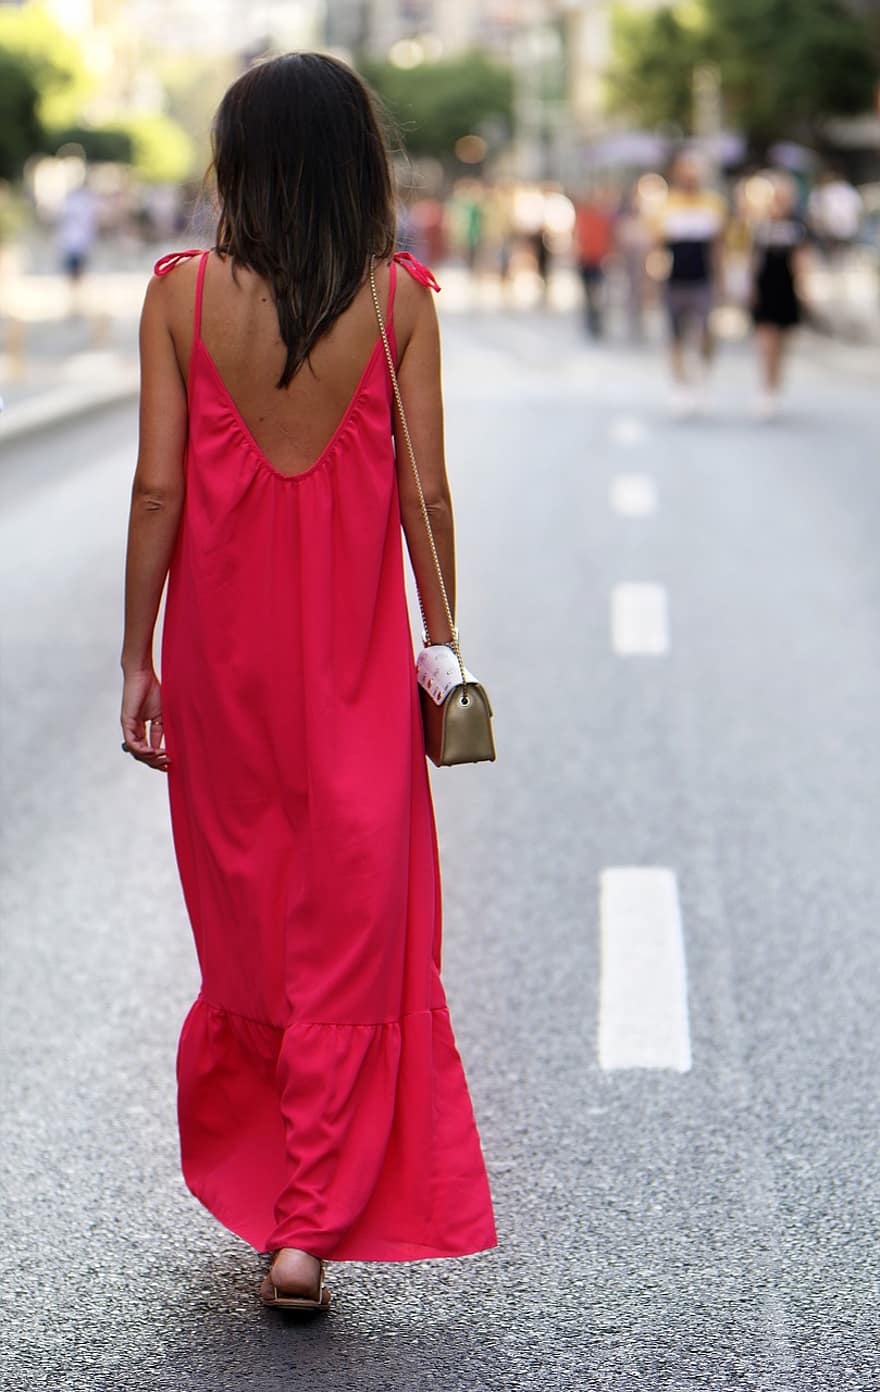 فتاة ، فستان طويل ، يمشي ، الطريق ، النساء ، شاب ، موضه ، ملفت للانتباه ، فستان أحمر ، كيس نقود ، الصيف